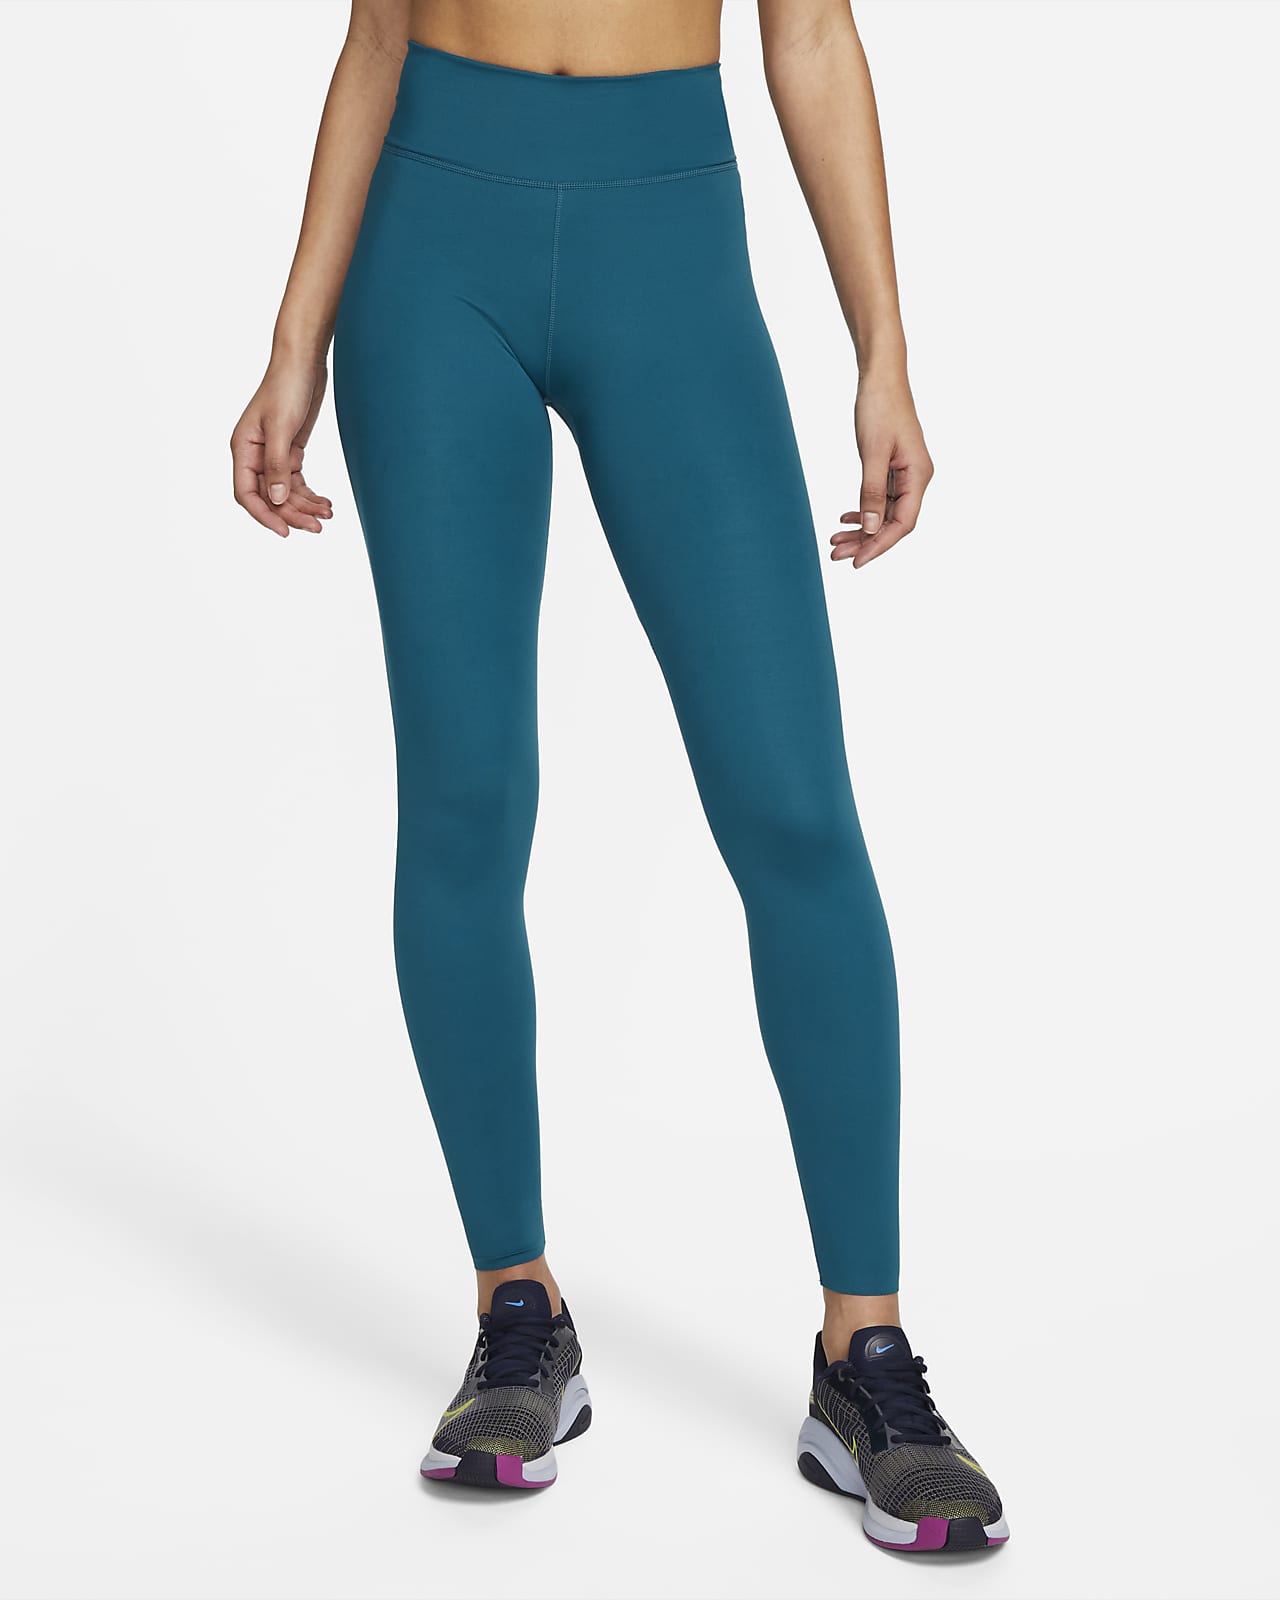 Nike One Luxe Leggings mit mittelhohem Bund für Damen